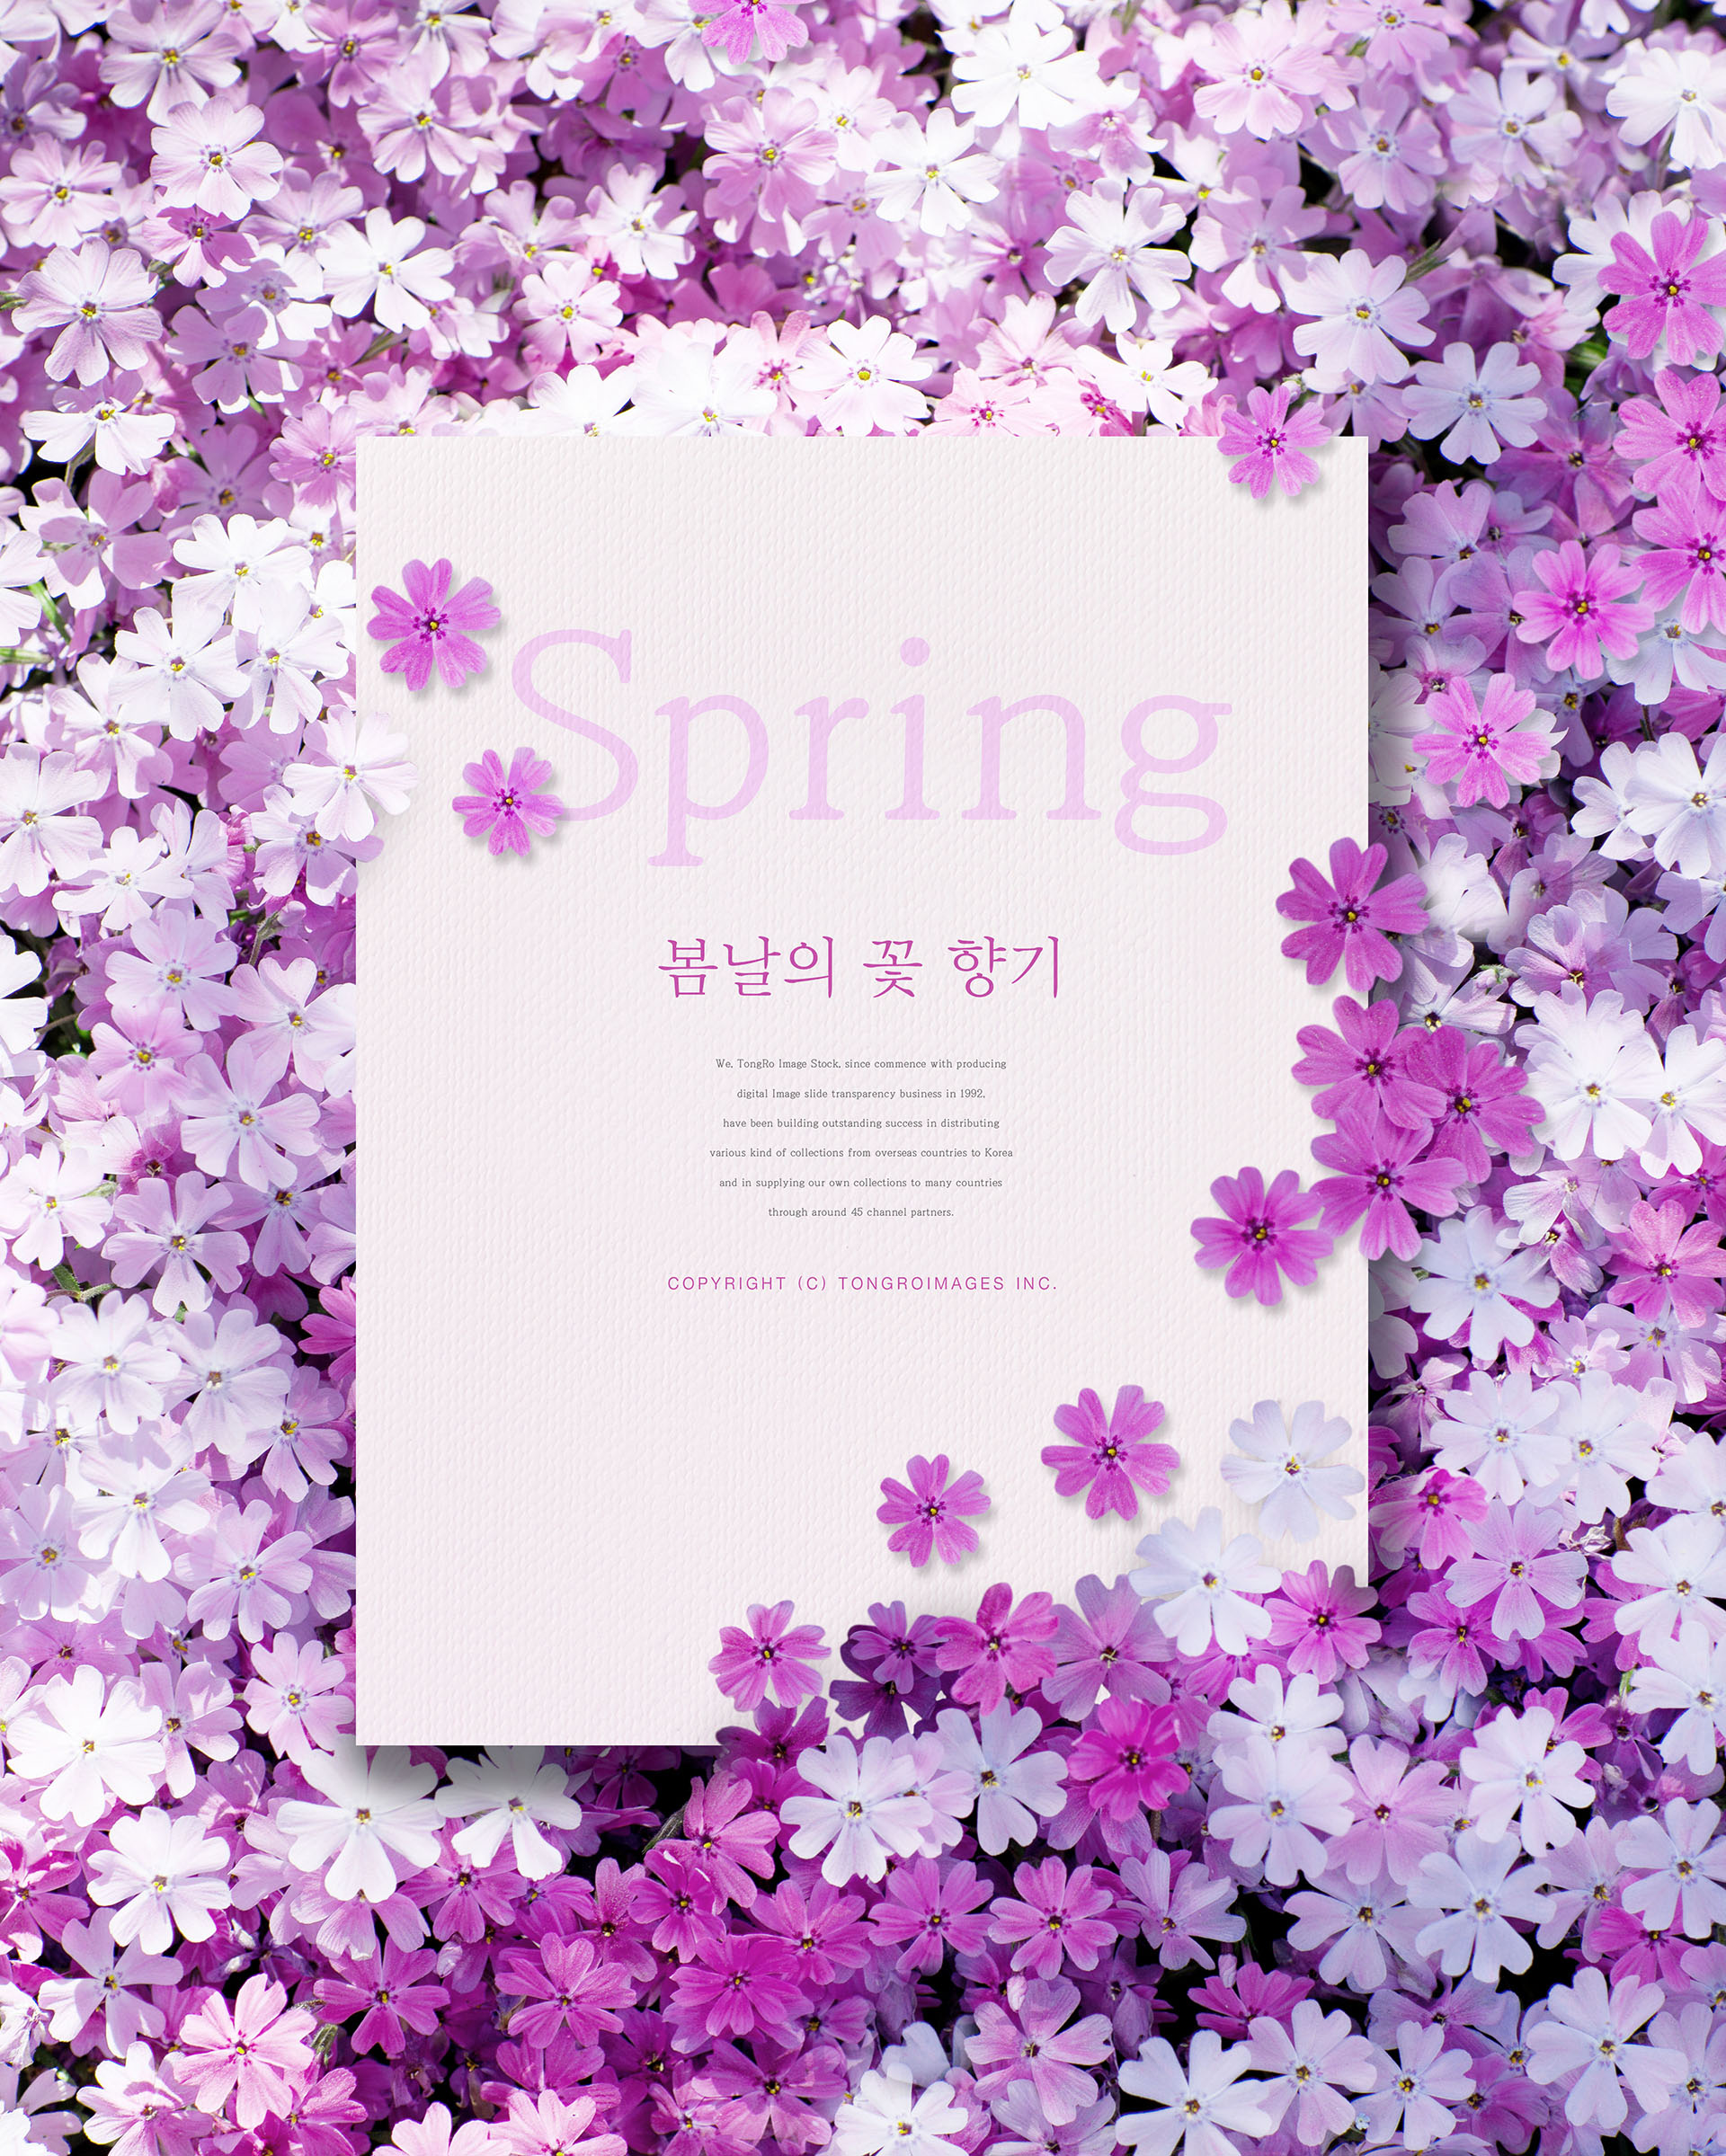 清新的春天氛围创意海报模板PSD插图(3)